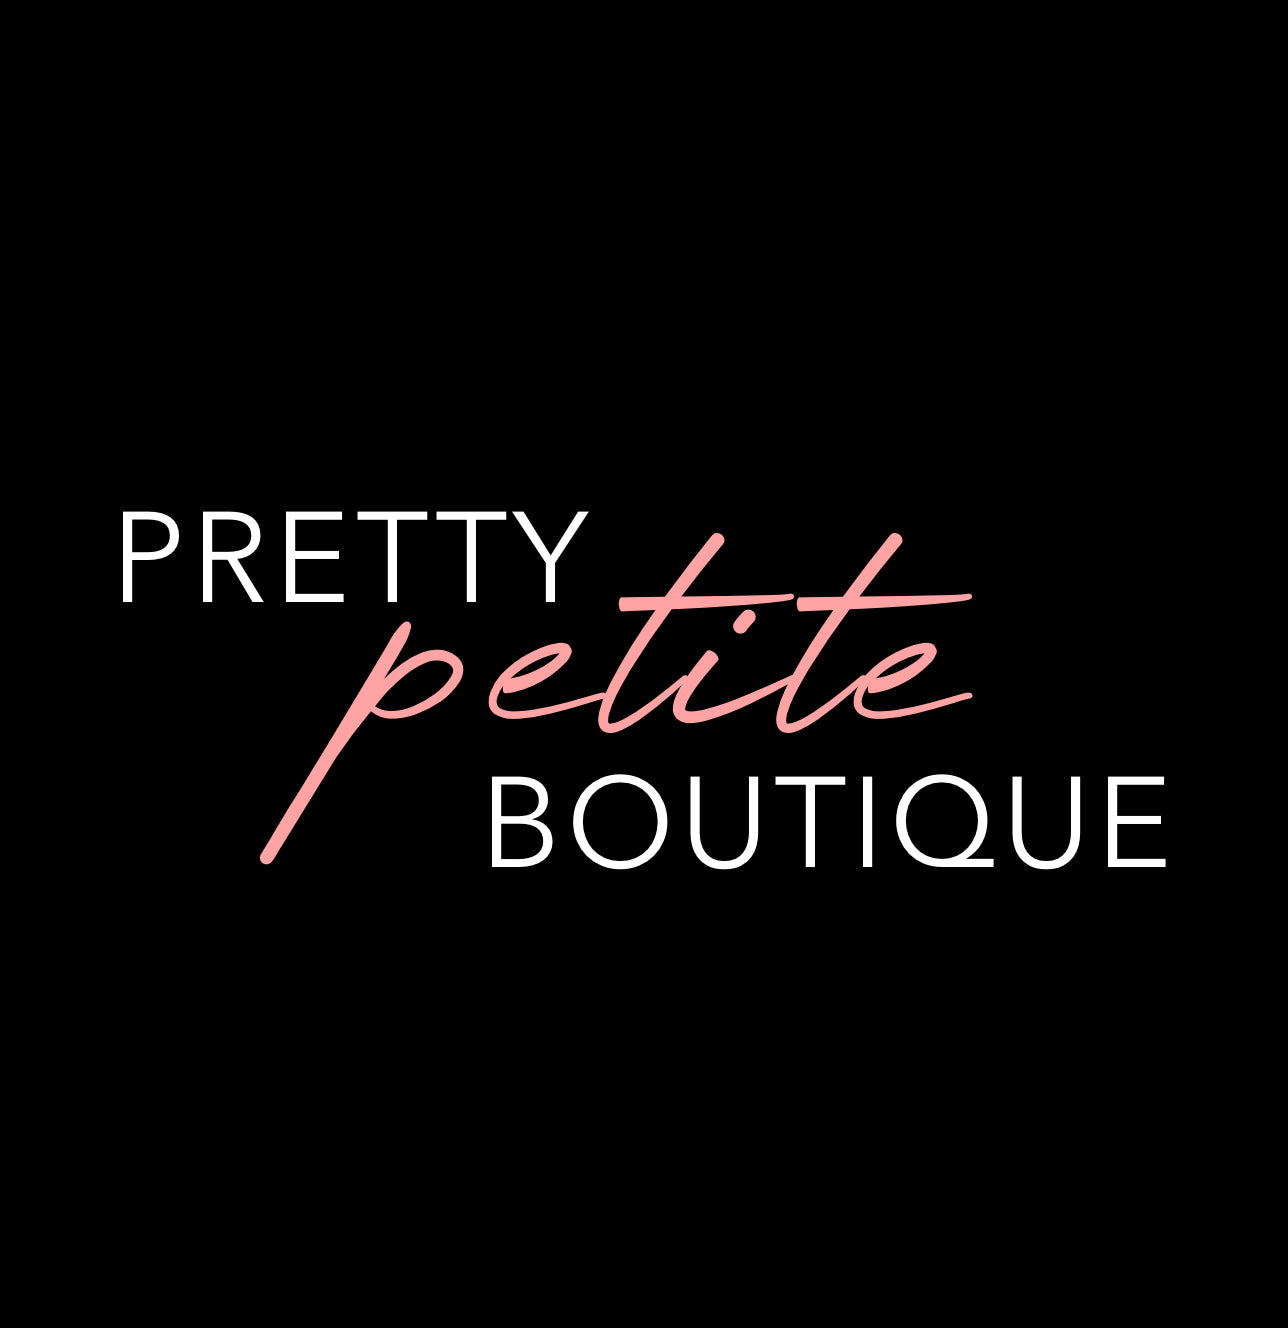 THE Boutique for Short Women – PrettyPetiteBoutiqueFashion